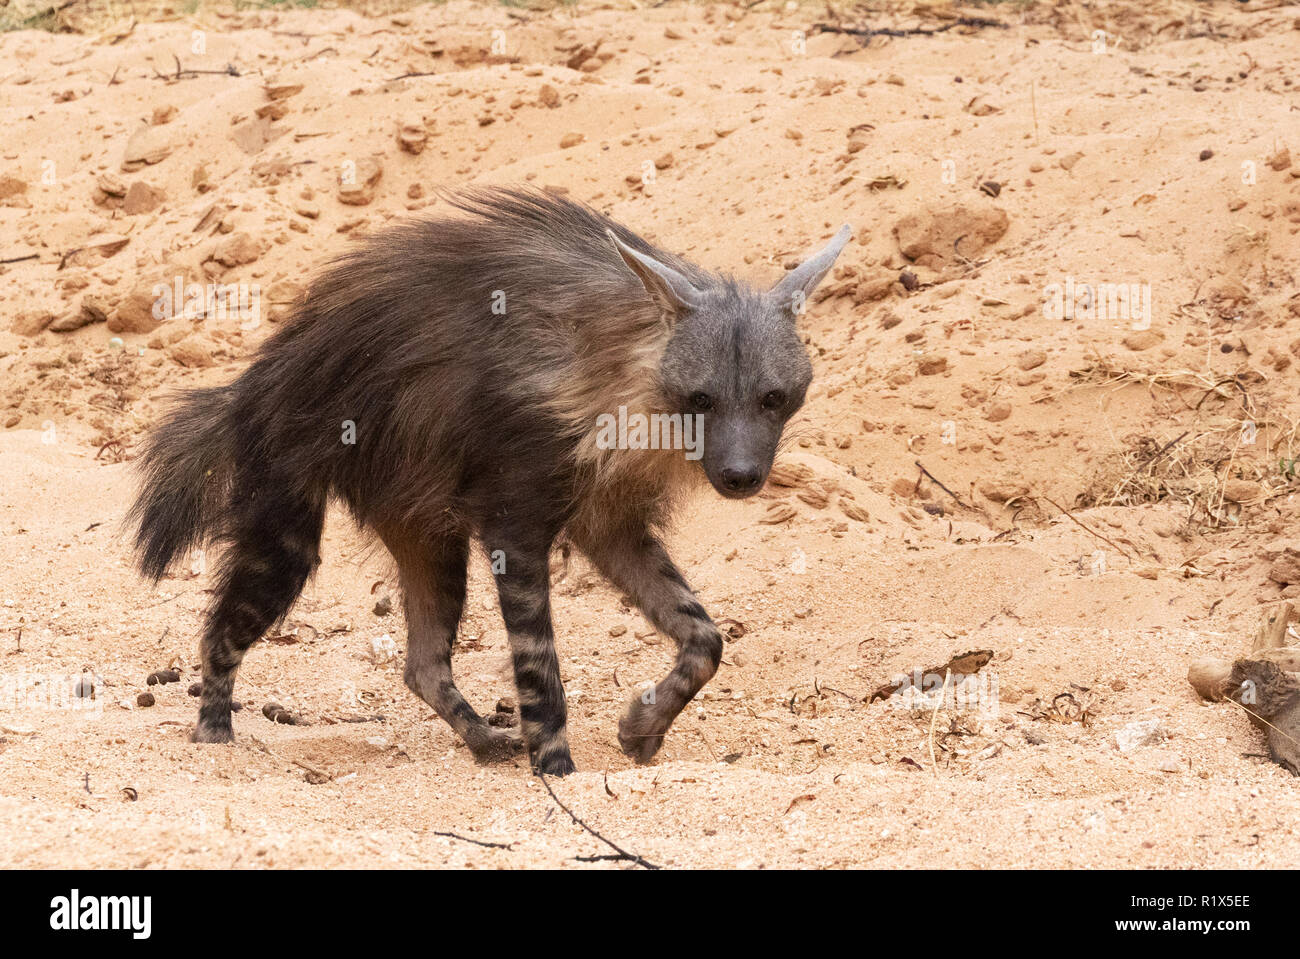 Hyène brune ( Hyaena brunnea ), l'un des profils avec vue latérale, exemple de la faune africaine, la Namibie Okonjima nature reserve, Afrique du Sud Banque D'Images